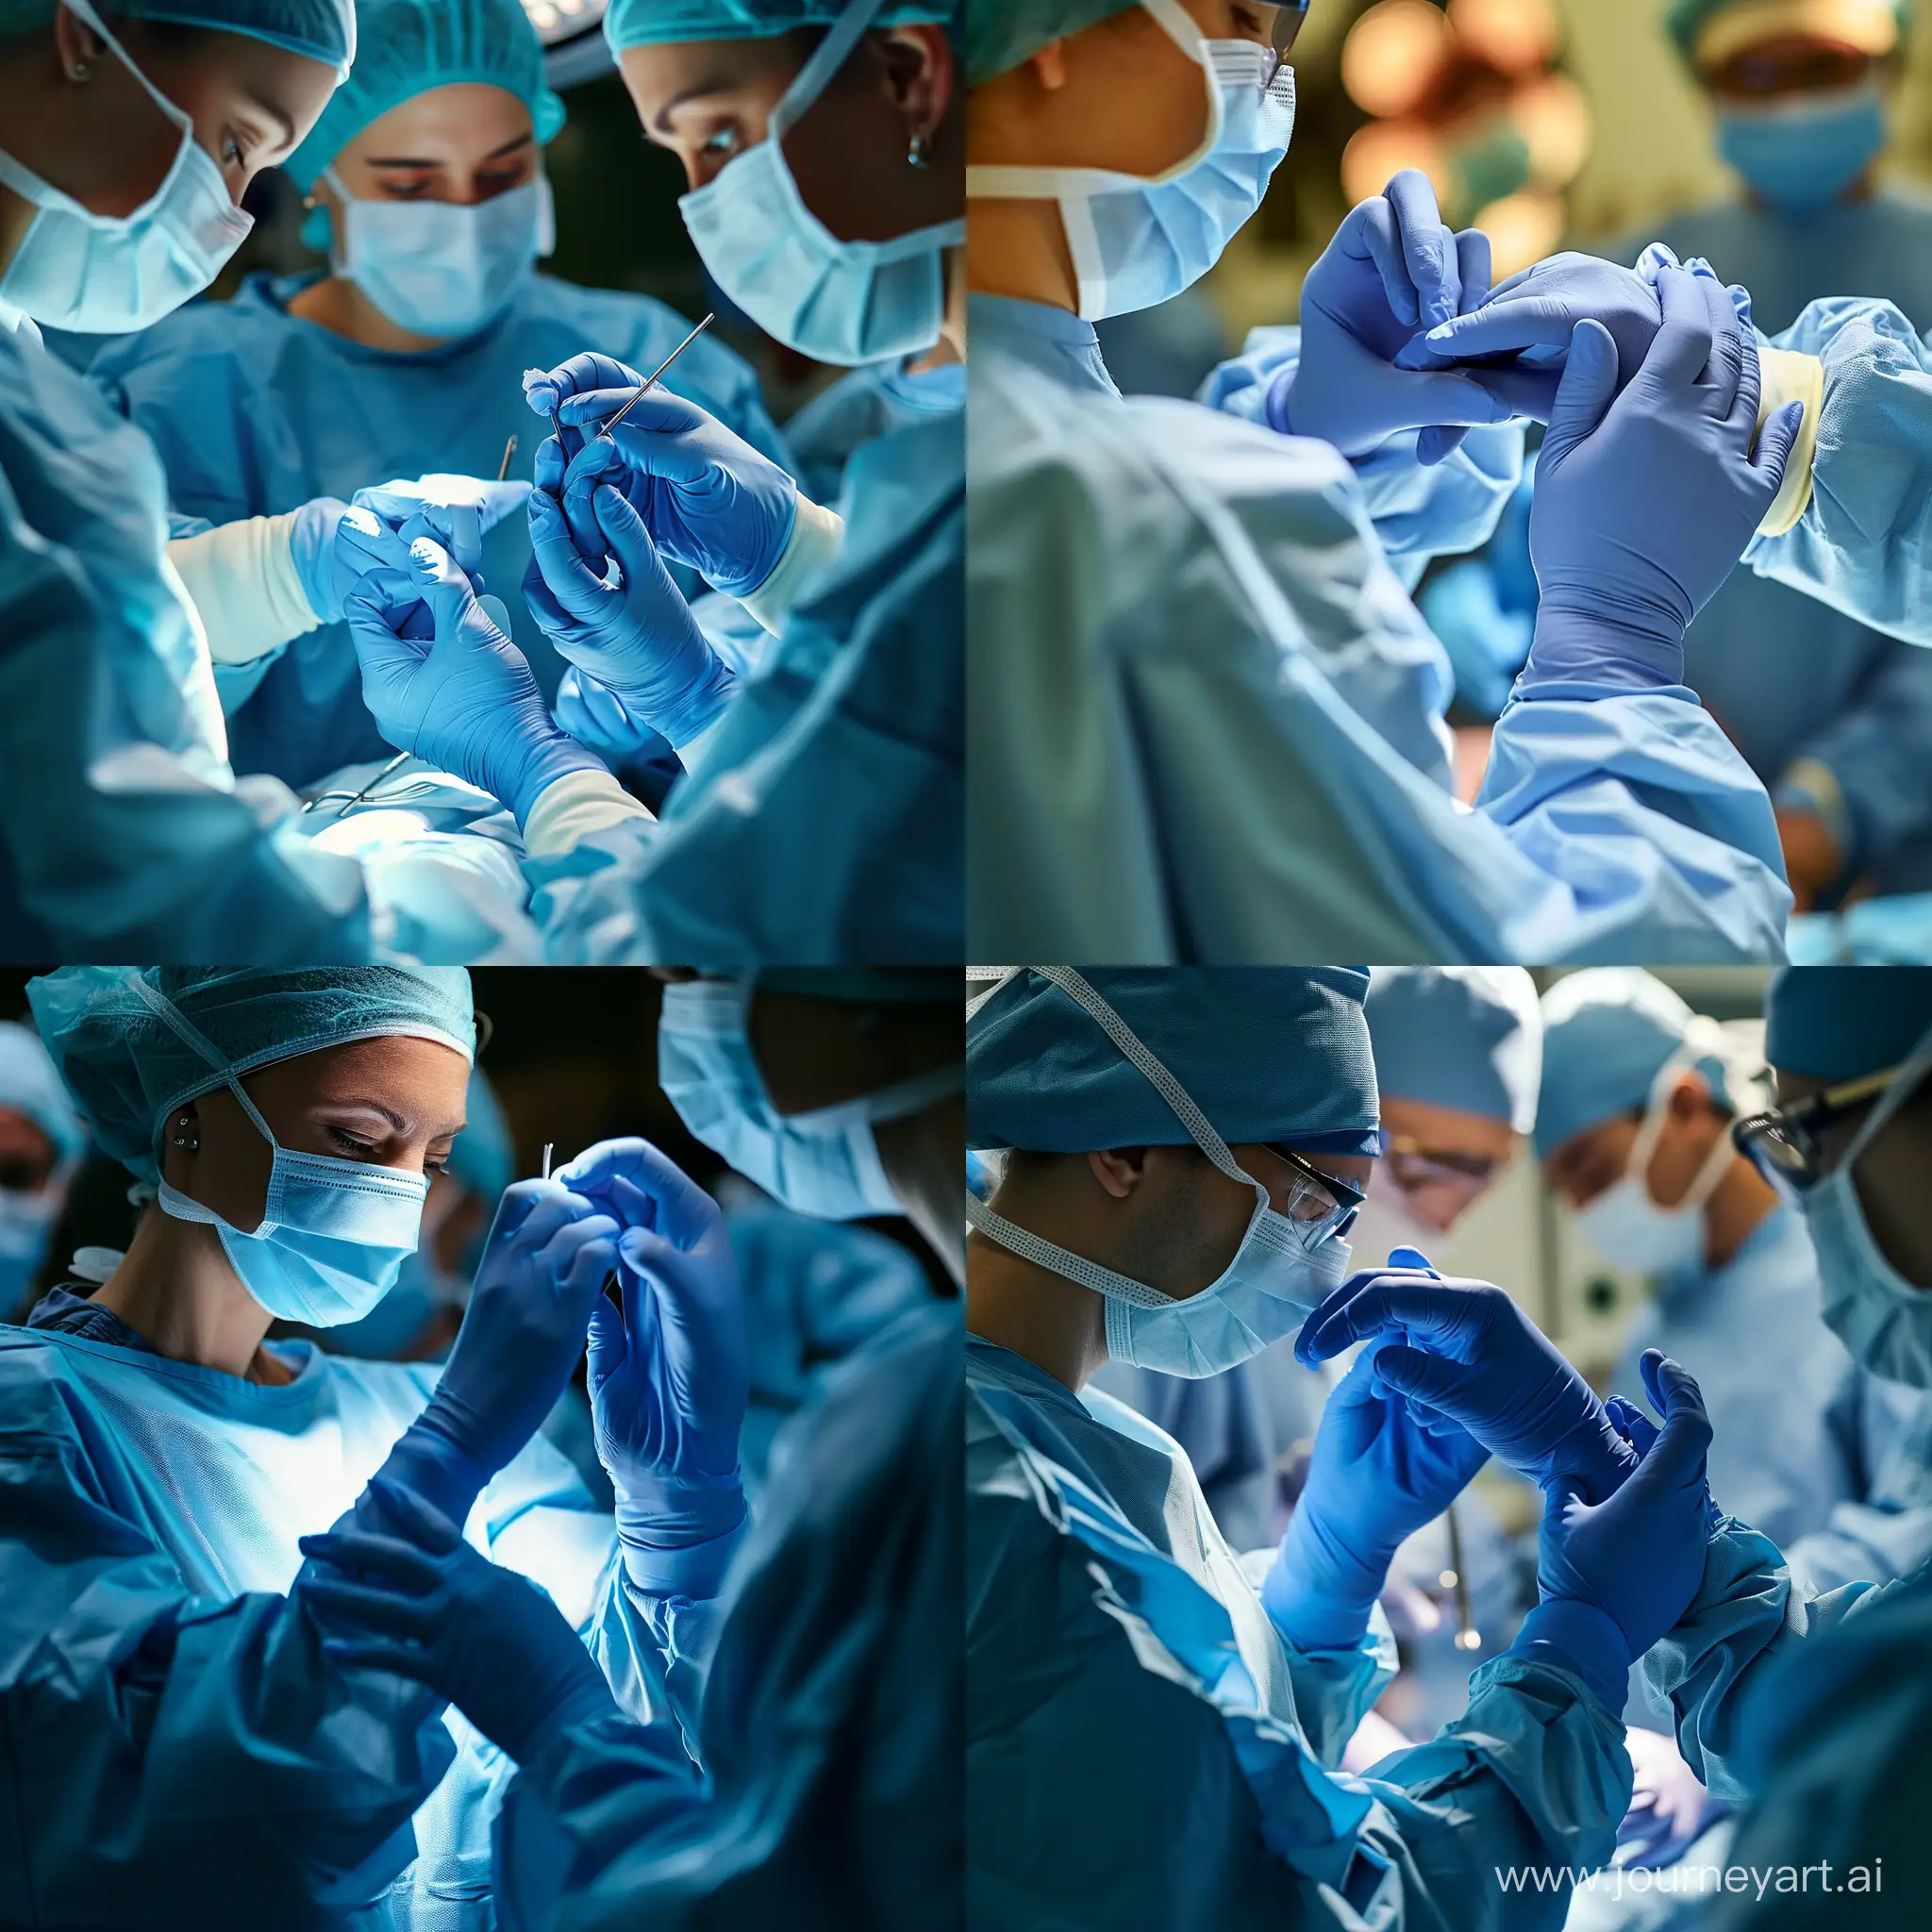 Медсестра надевает хирургу голубые перчатки в операционной для проведения операции, фотография, реализм, детали, крупным планом